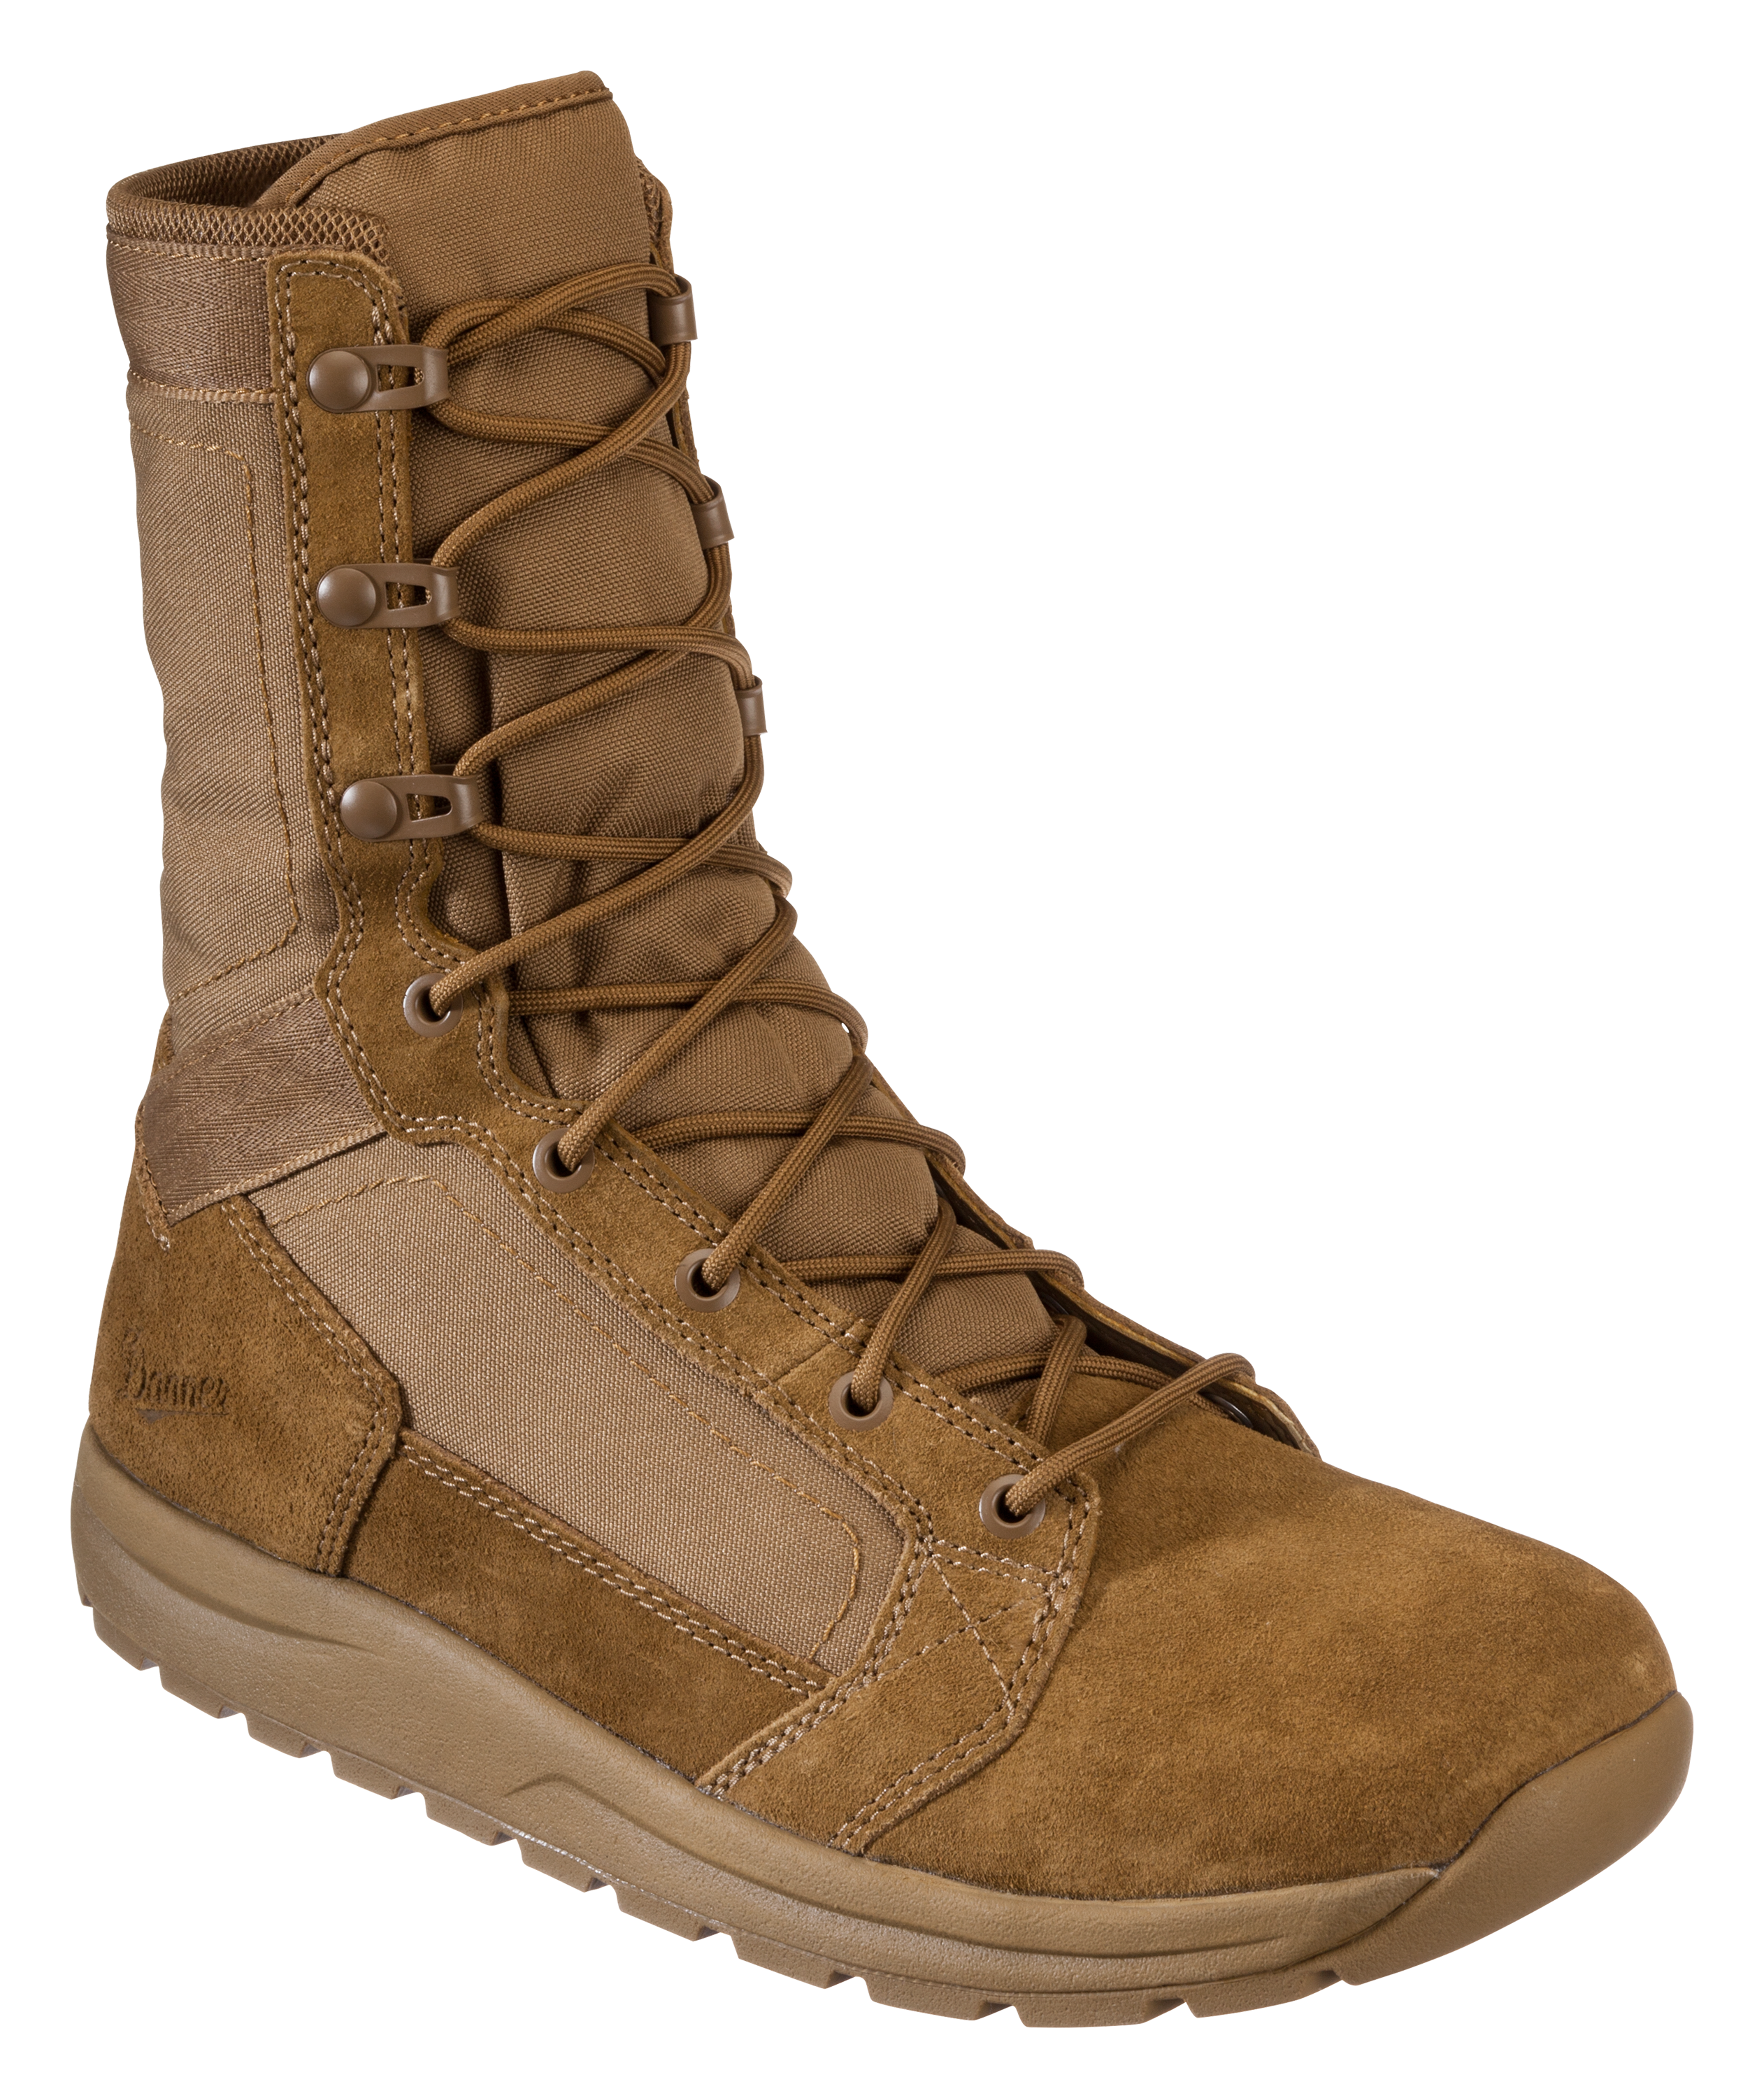 Danner Tachyon Tactical Boots for Men - Coyote - 10.5M